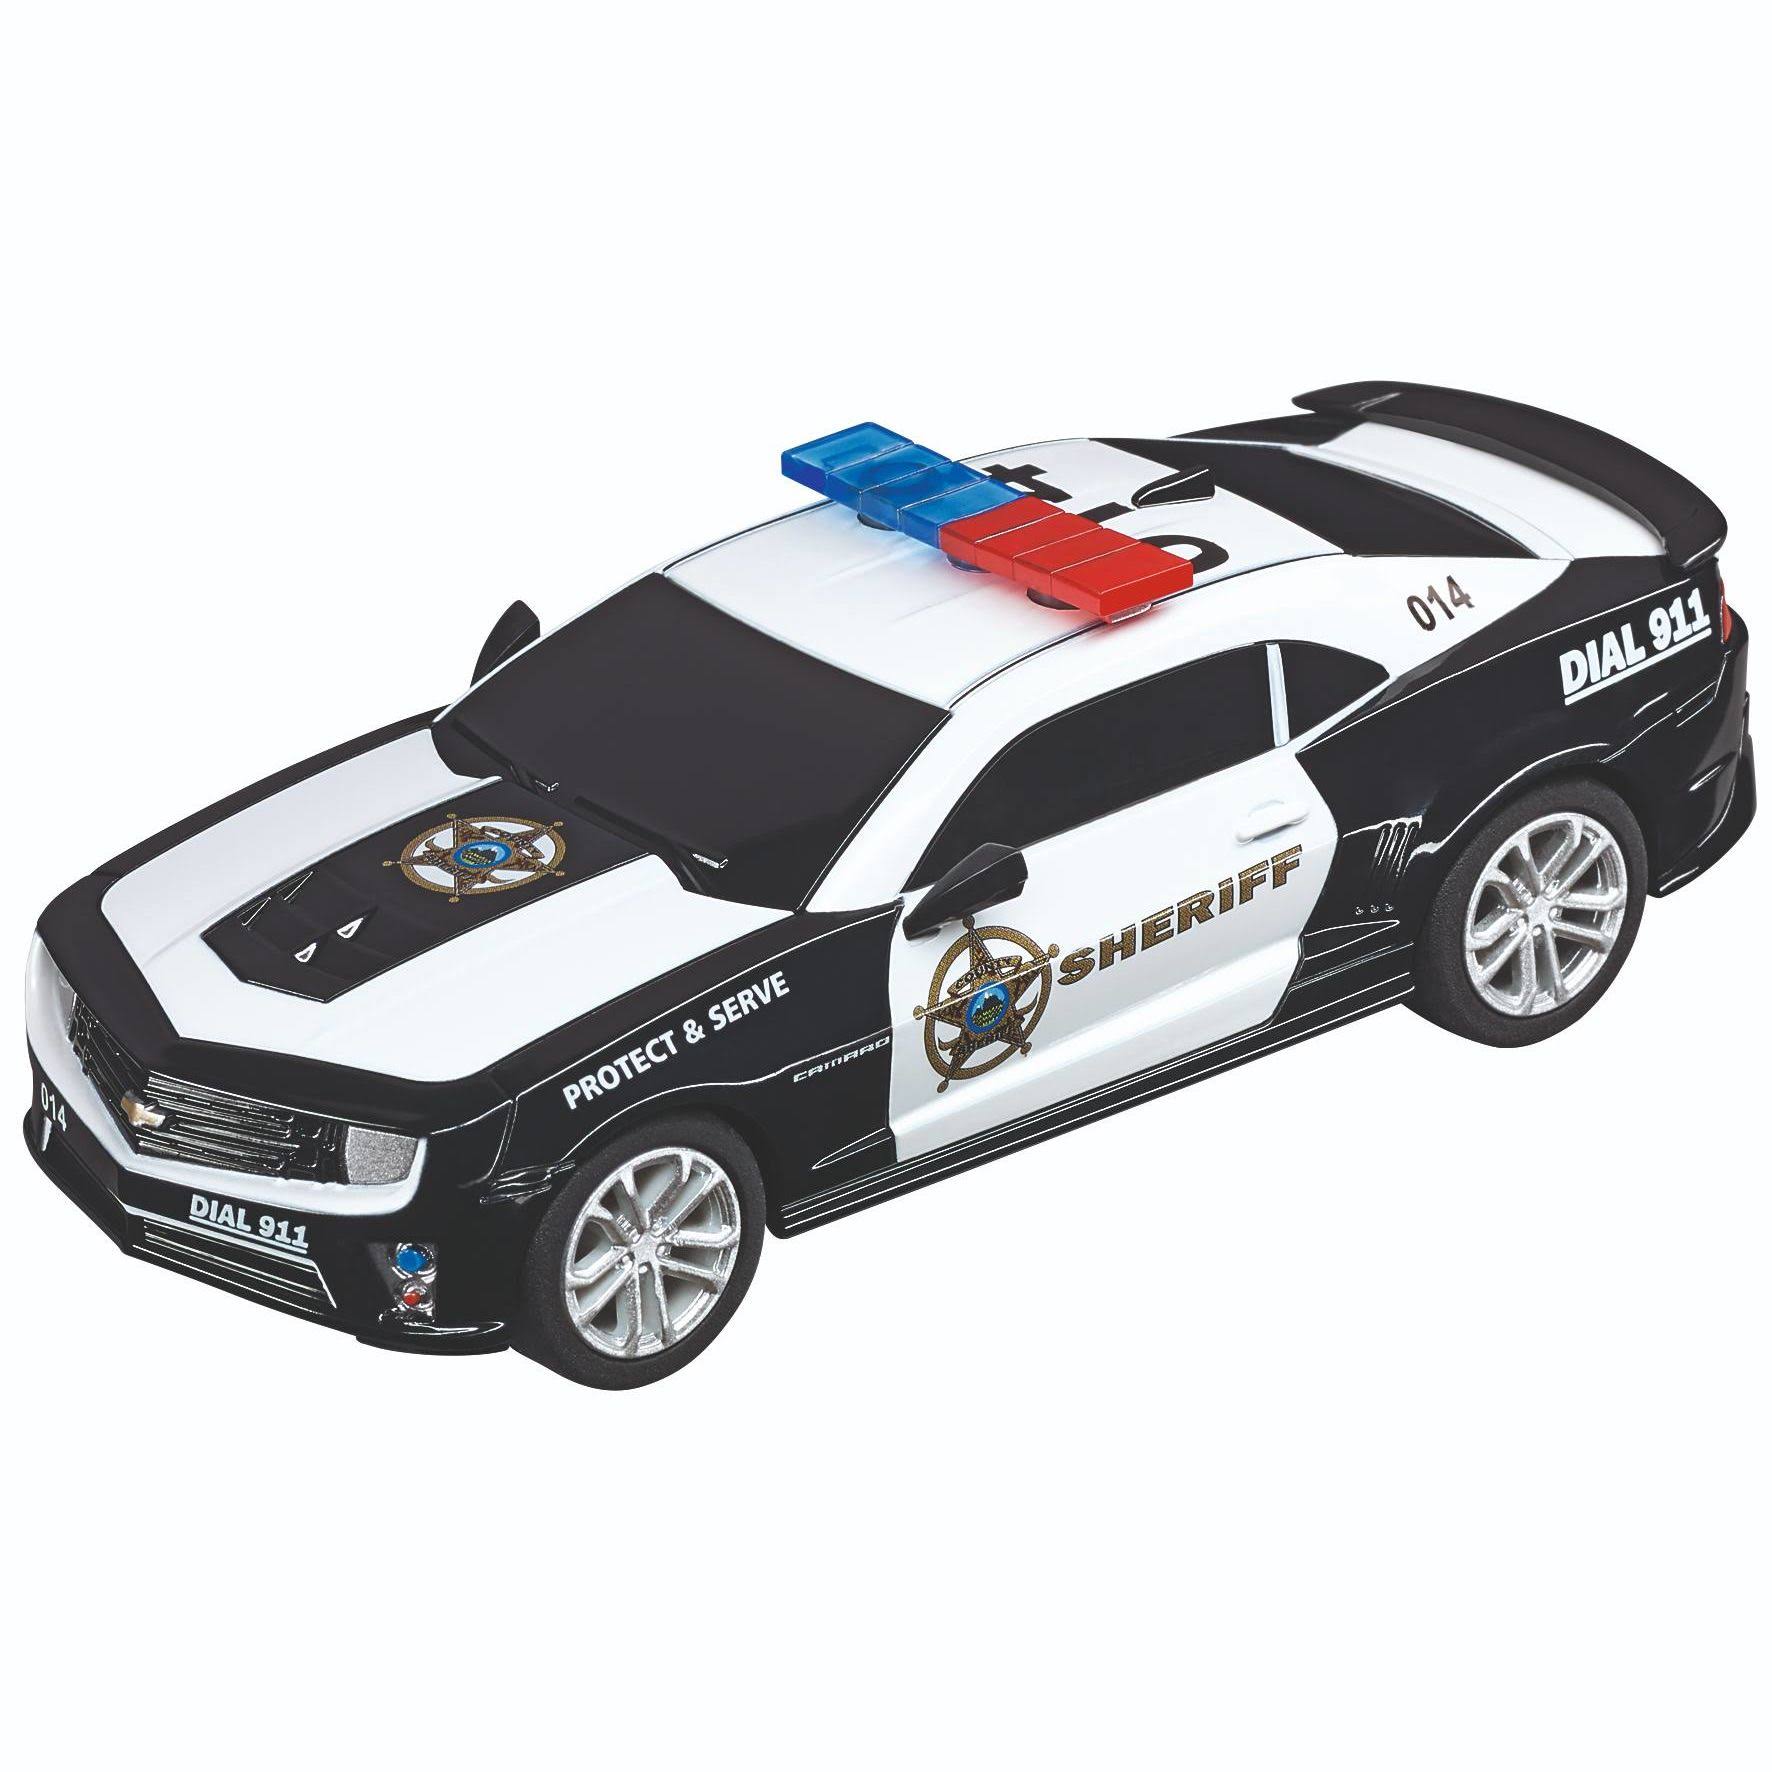 Carrera GO!!! Chevrolet Camaro "Sheriff" Slot Car Model Kit - 1:43 Scale